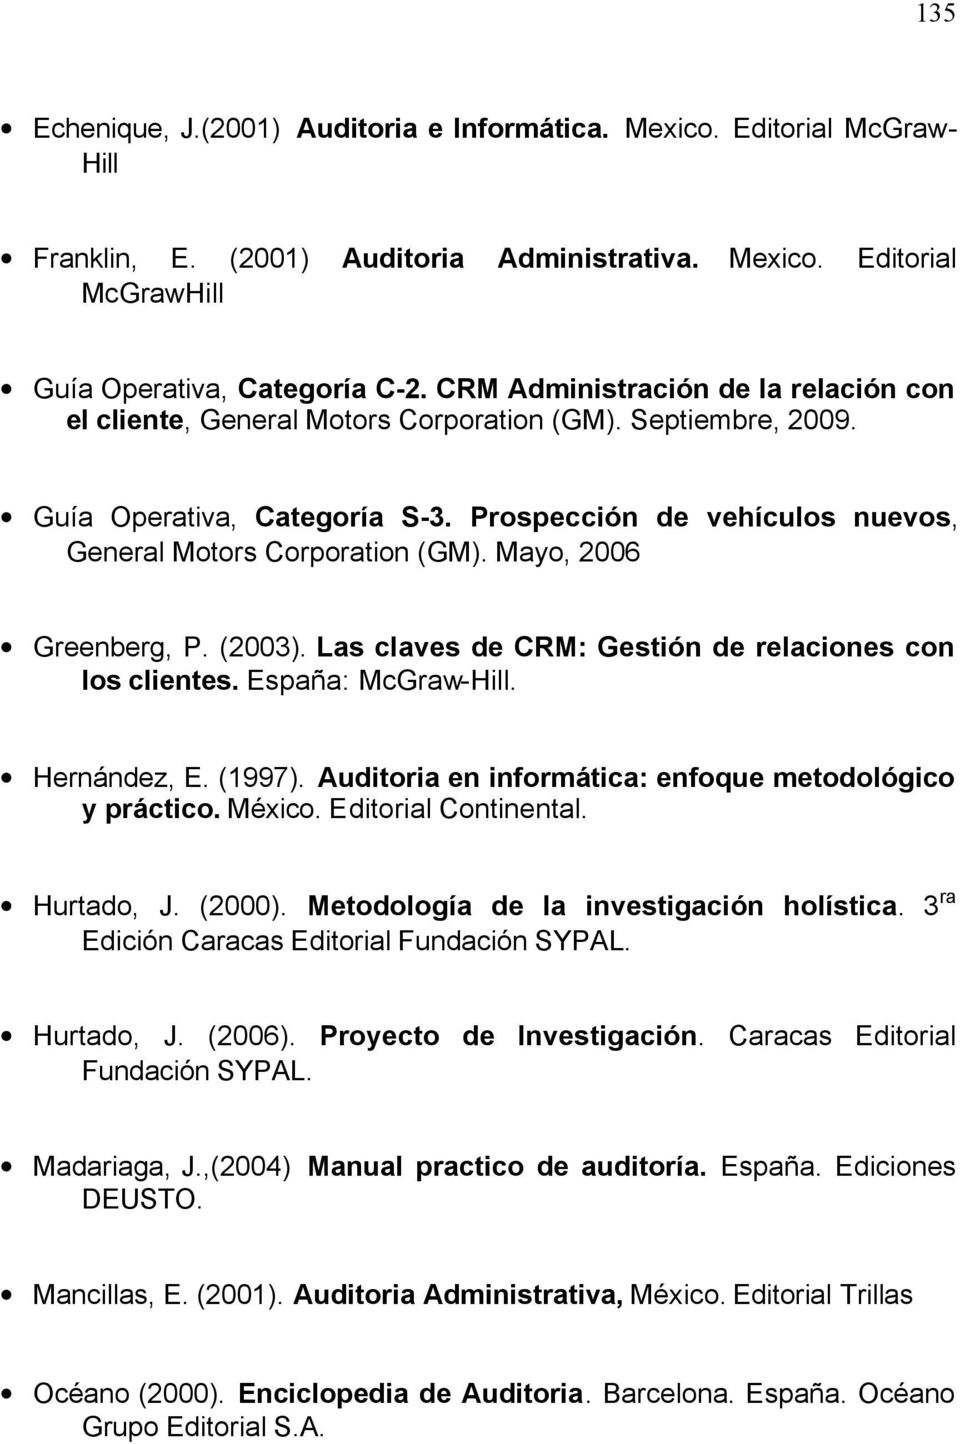 Mayo, 2006 Greenberg, P. (2003). Las claves de CRM: Gestión de relaciones con los clientes. España: McGraw-Hill. Hernández, E. (1997). Auditoria en informática: enfoque metodológico y práctico.